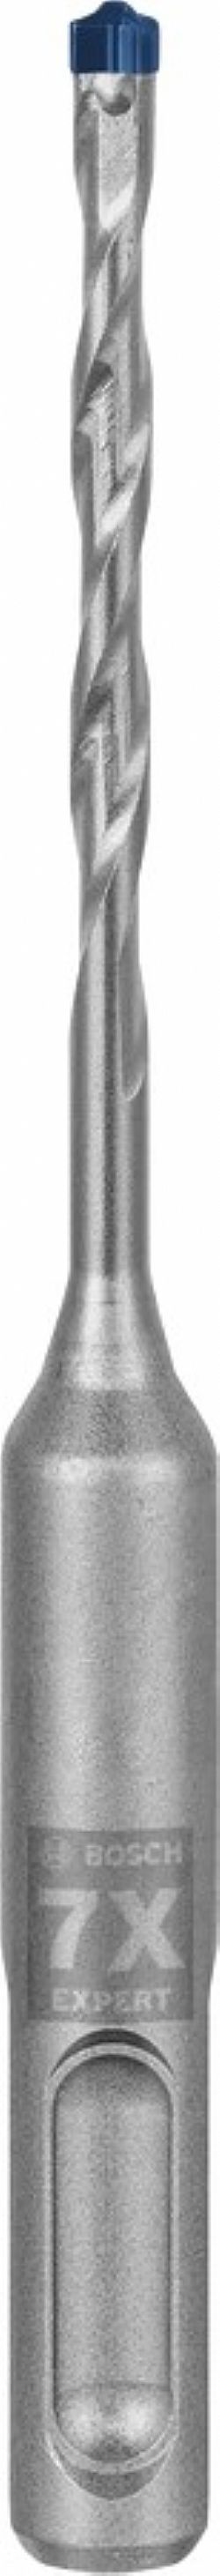 Κρουστικό τρυπάνι (4.0Χ115mm) EXPERT SDS-PLUS-7X BOSCH